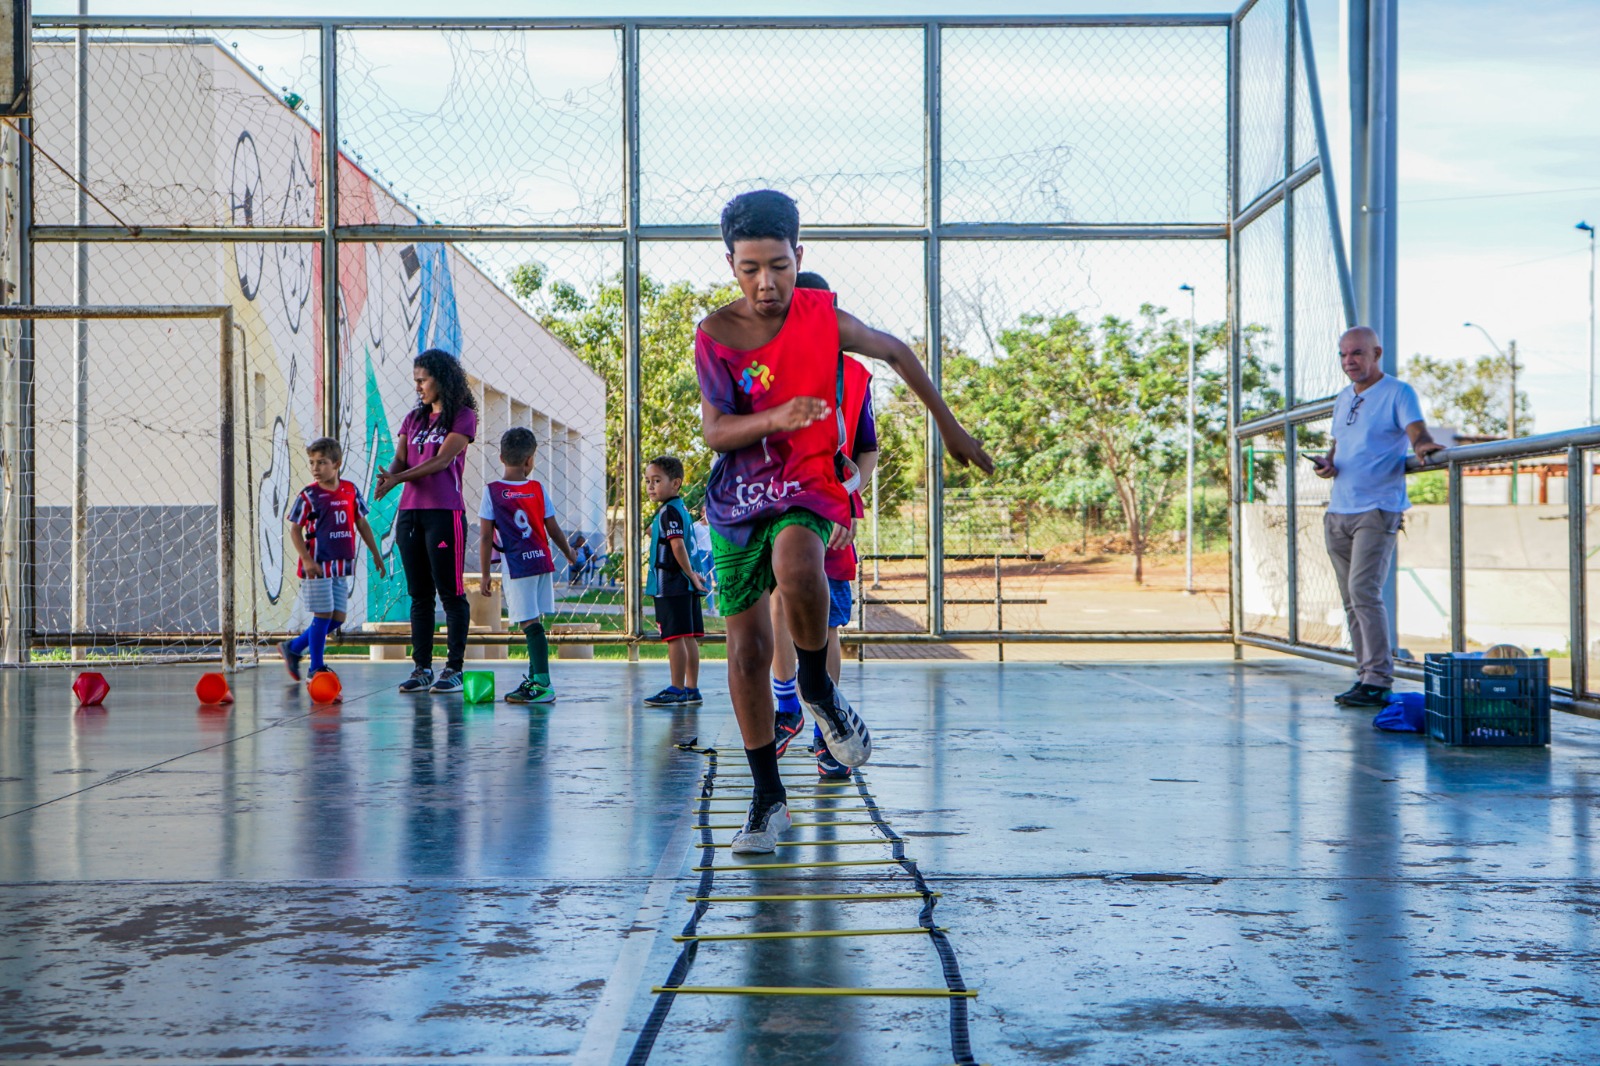 Jovens de sete a 17 anos matriculados no ensino público podem ser inscritos gratuitamente nos centros para aulas de futebol, futsal, handebol e vôlei.